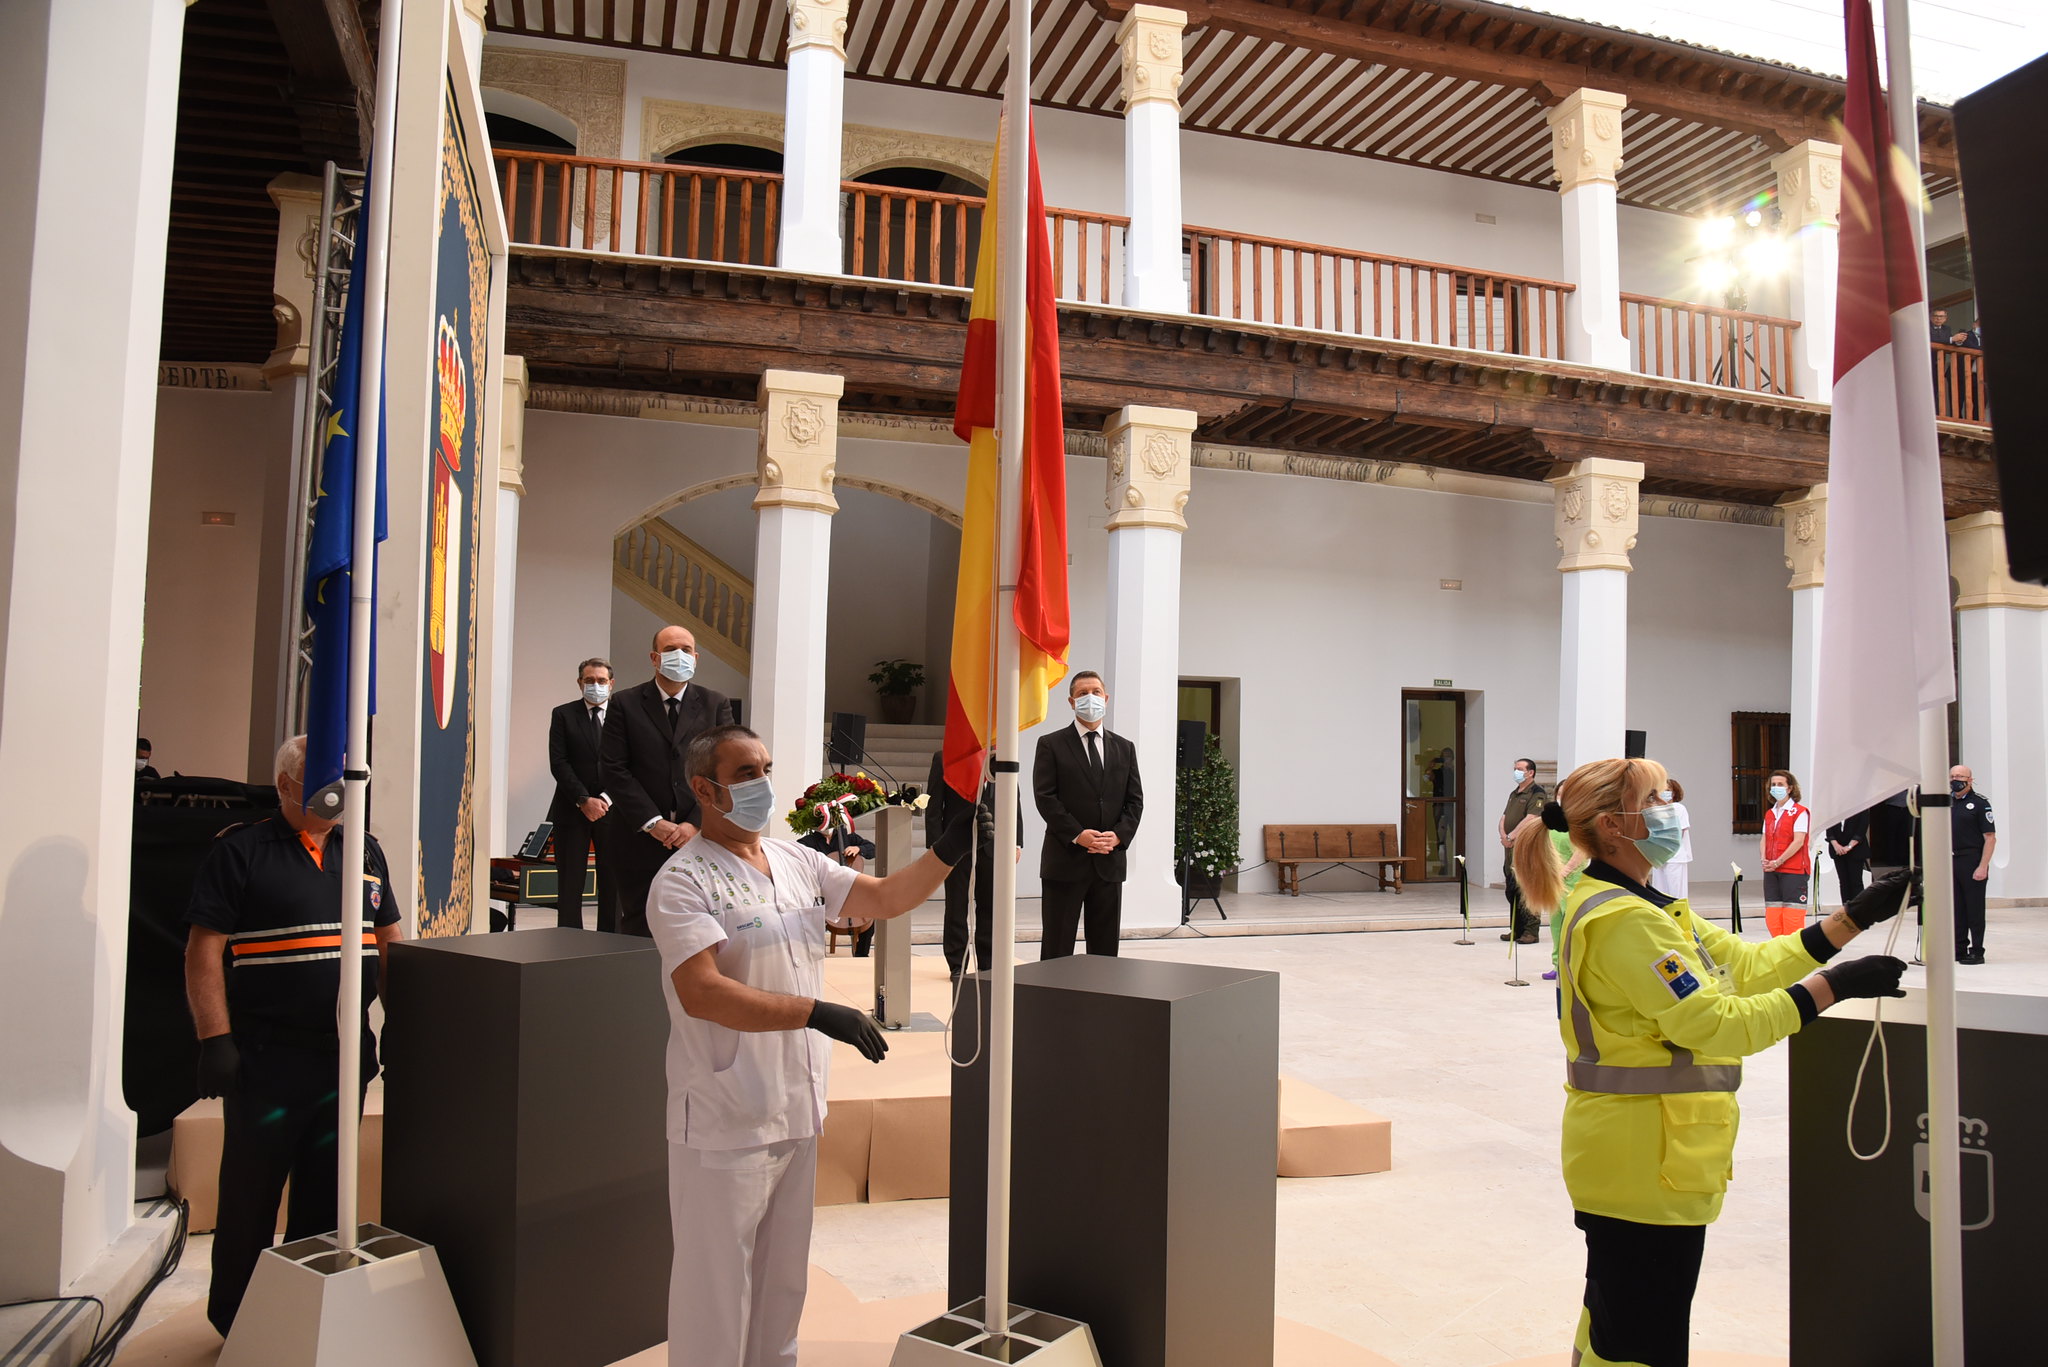 El Día de la Región tuvo su acto solemne en el Palacio de Fuensalida de la ciudad imperial